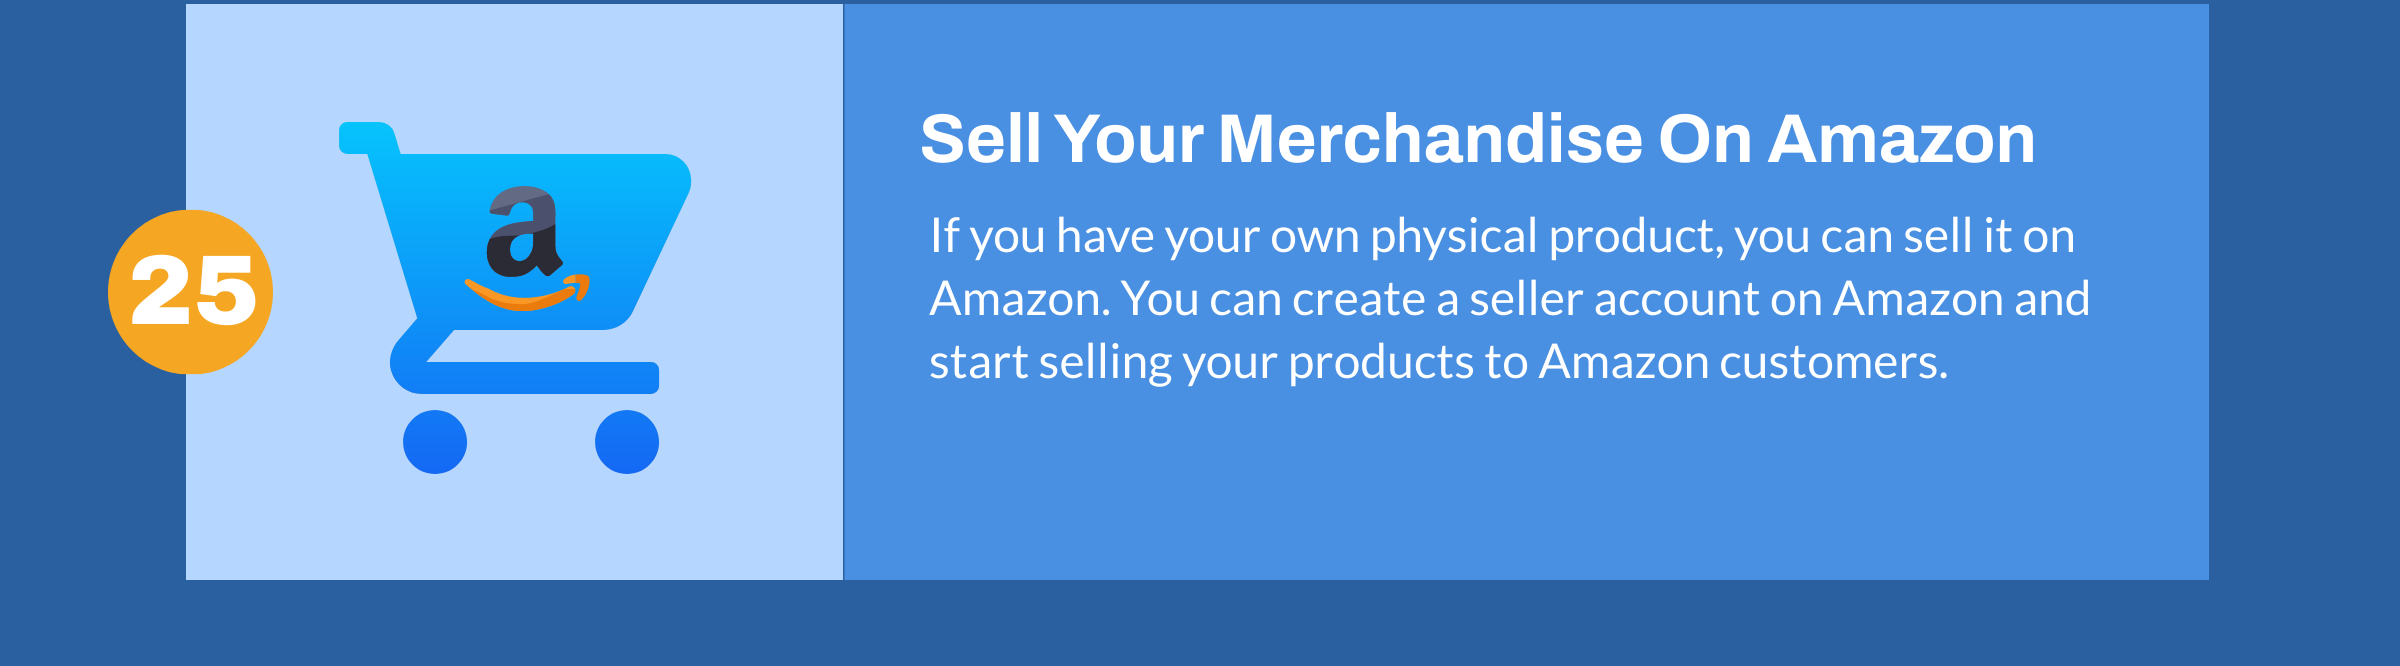 Merchandise verkopen op Amazon